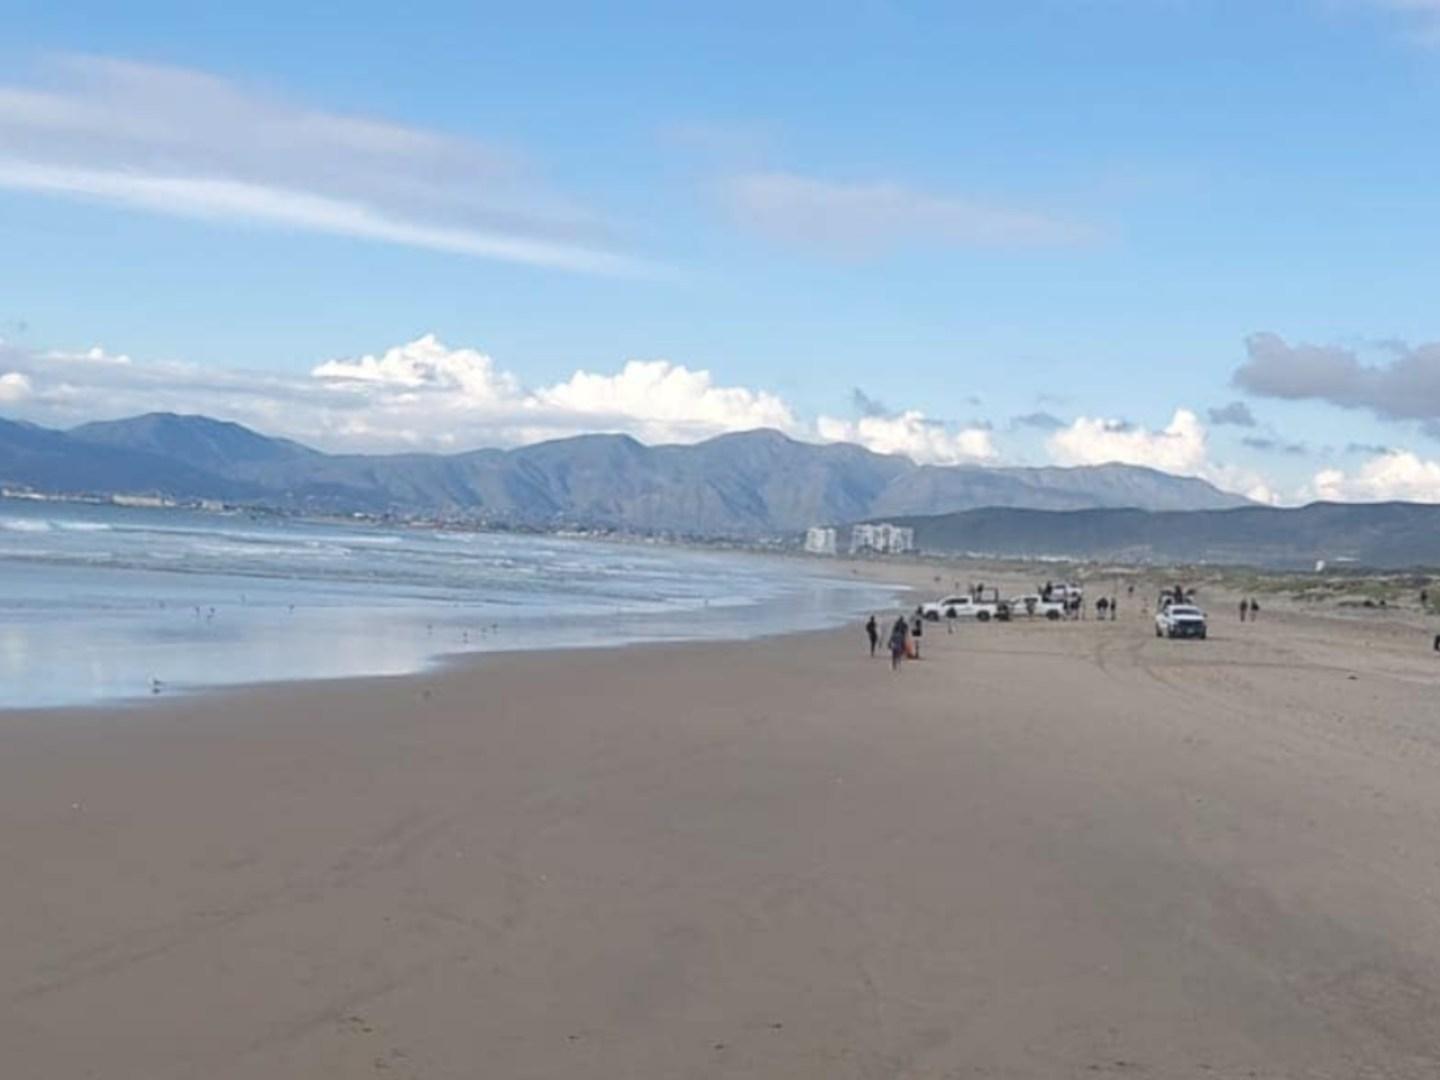 Localizan Cuerpo de Segundo Militar en Playa de Ensenada, Baja California